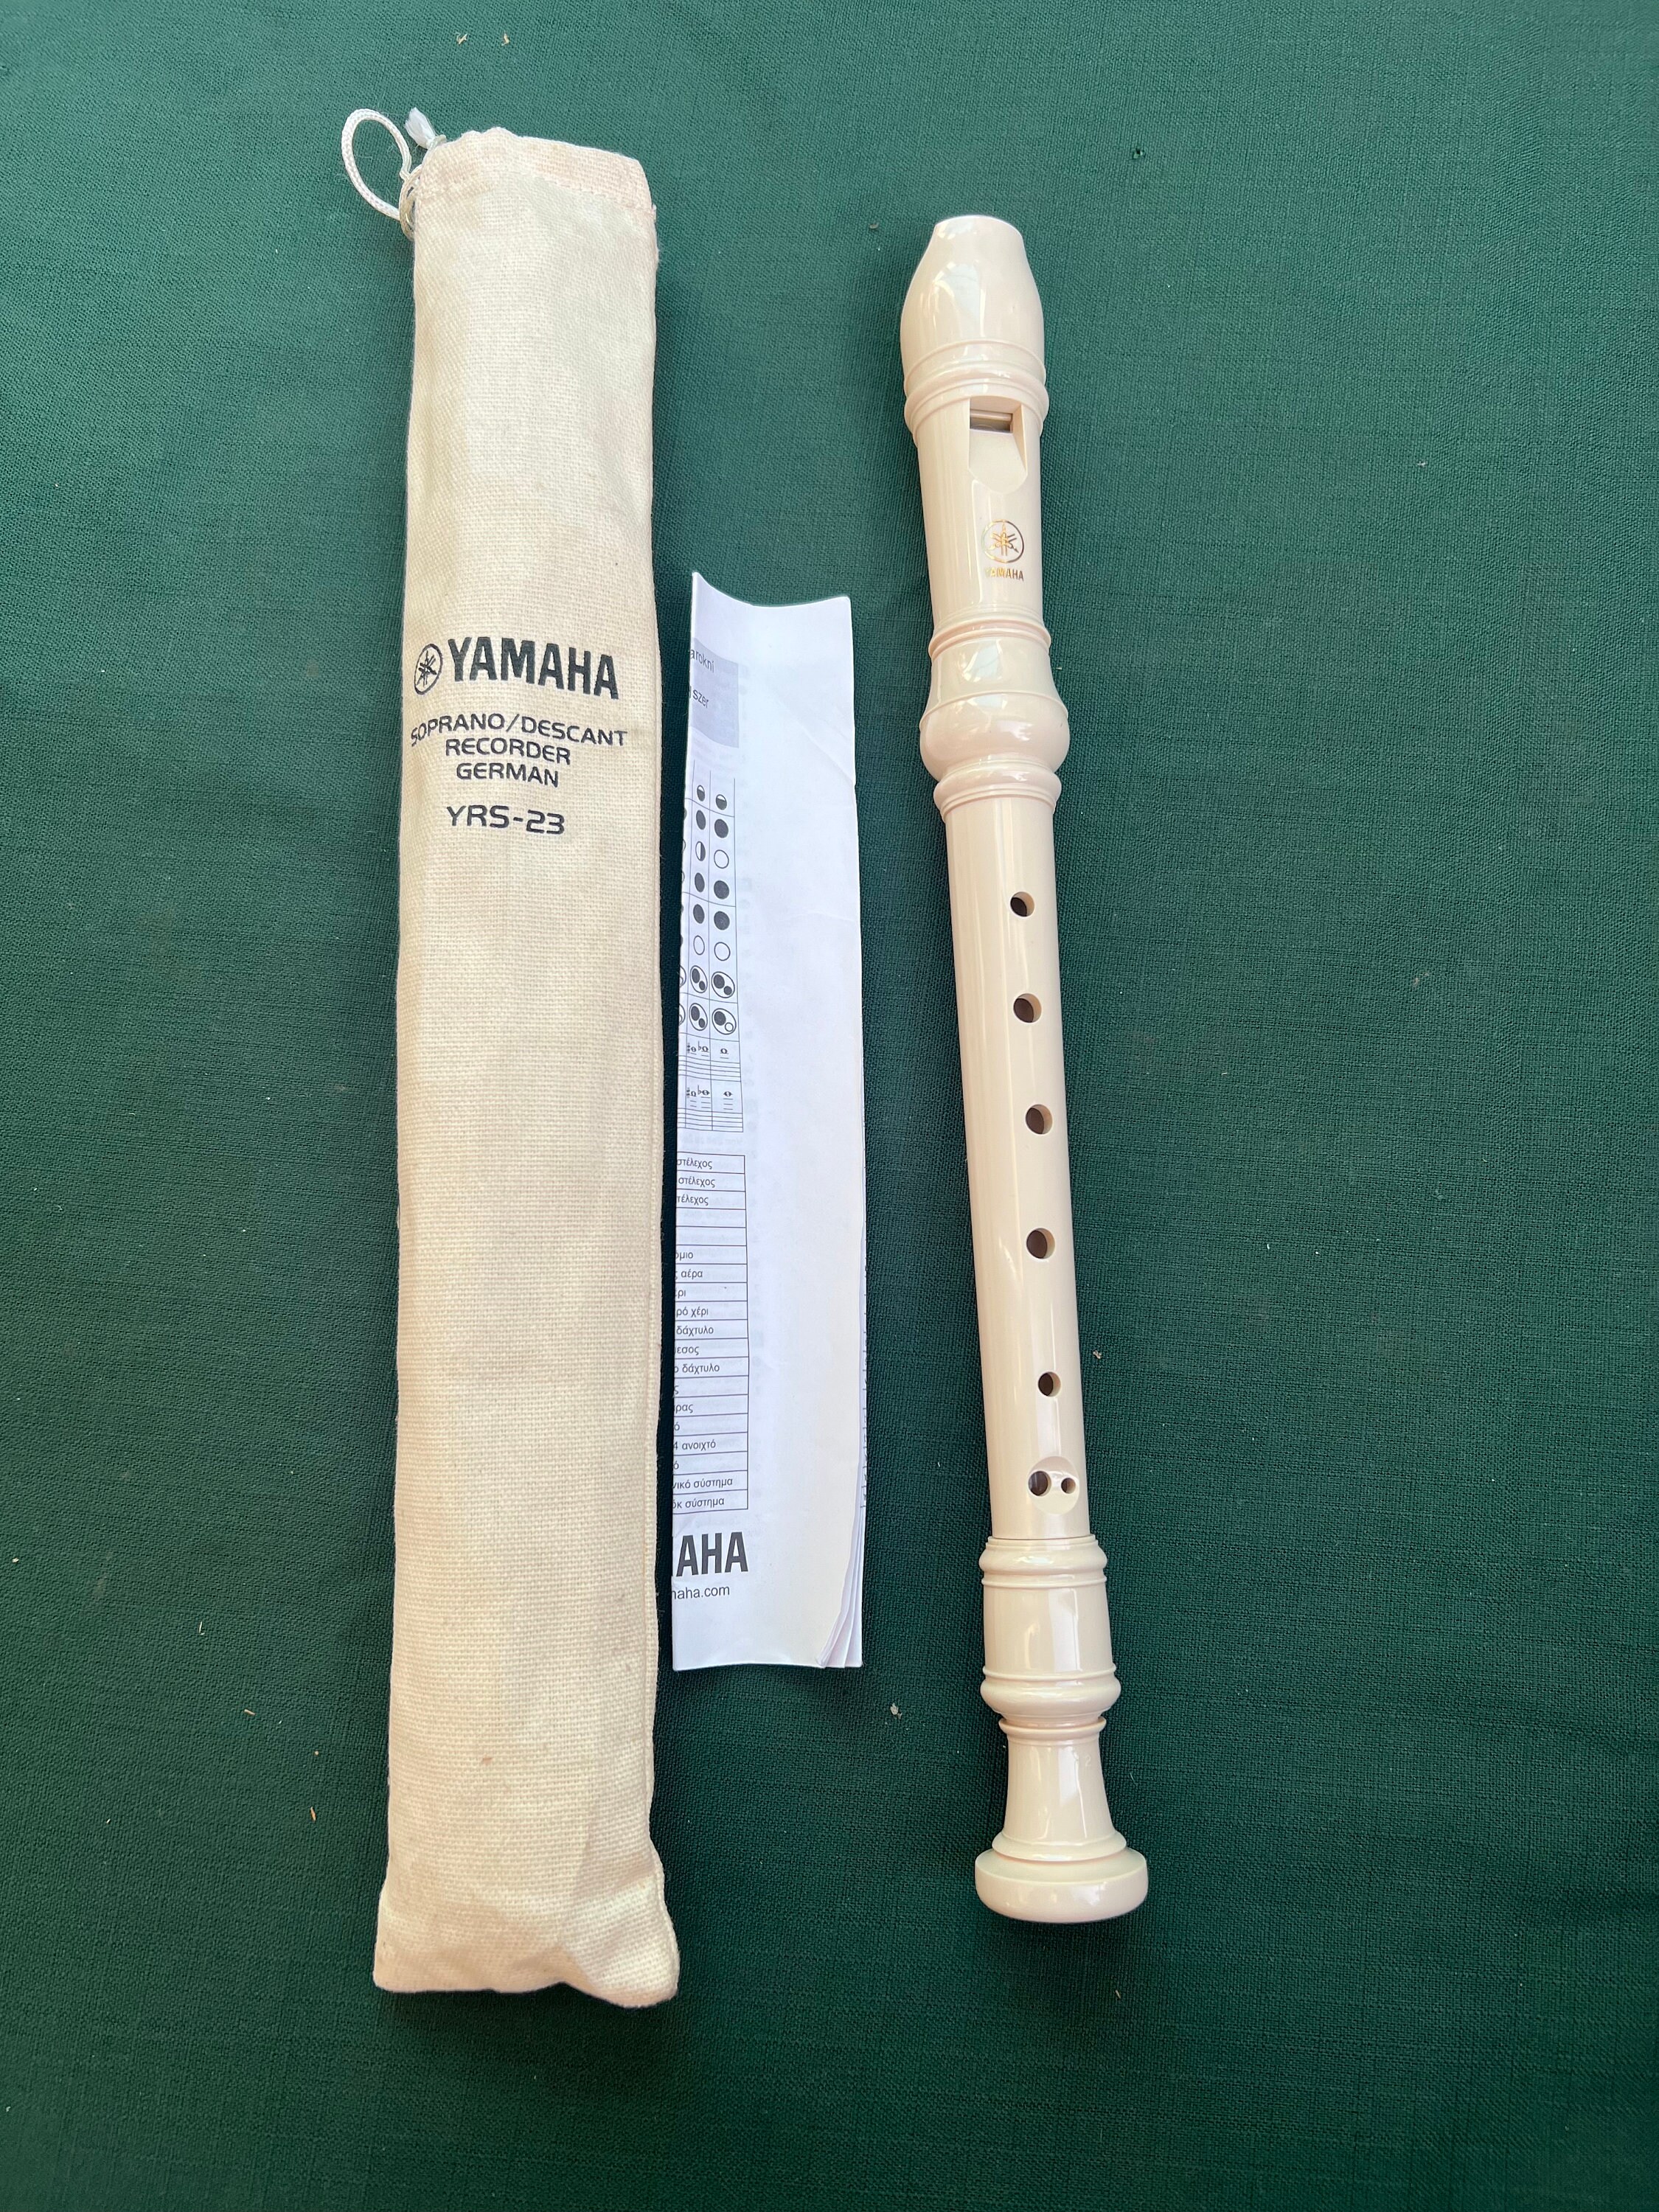 Flûte à bec chilienne vintage, flûte à bec Yamaha, flûte à bec Aulos Emp,  flûte traversière ethnique folk sud-américaine, flûte traversière à sifflet  chilienne -  Canada